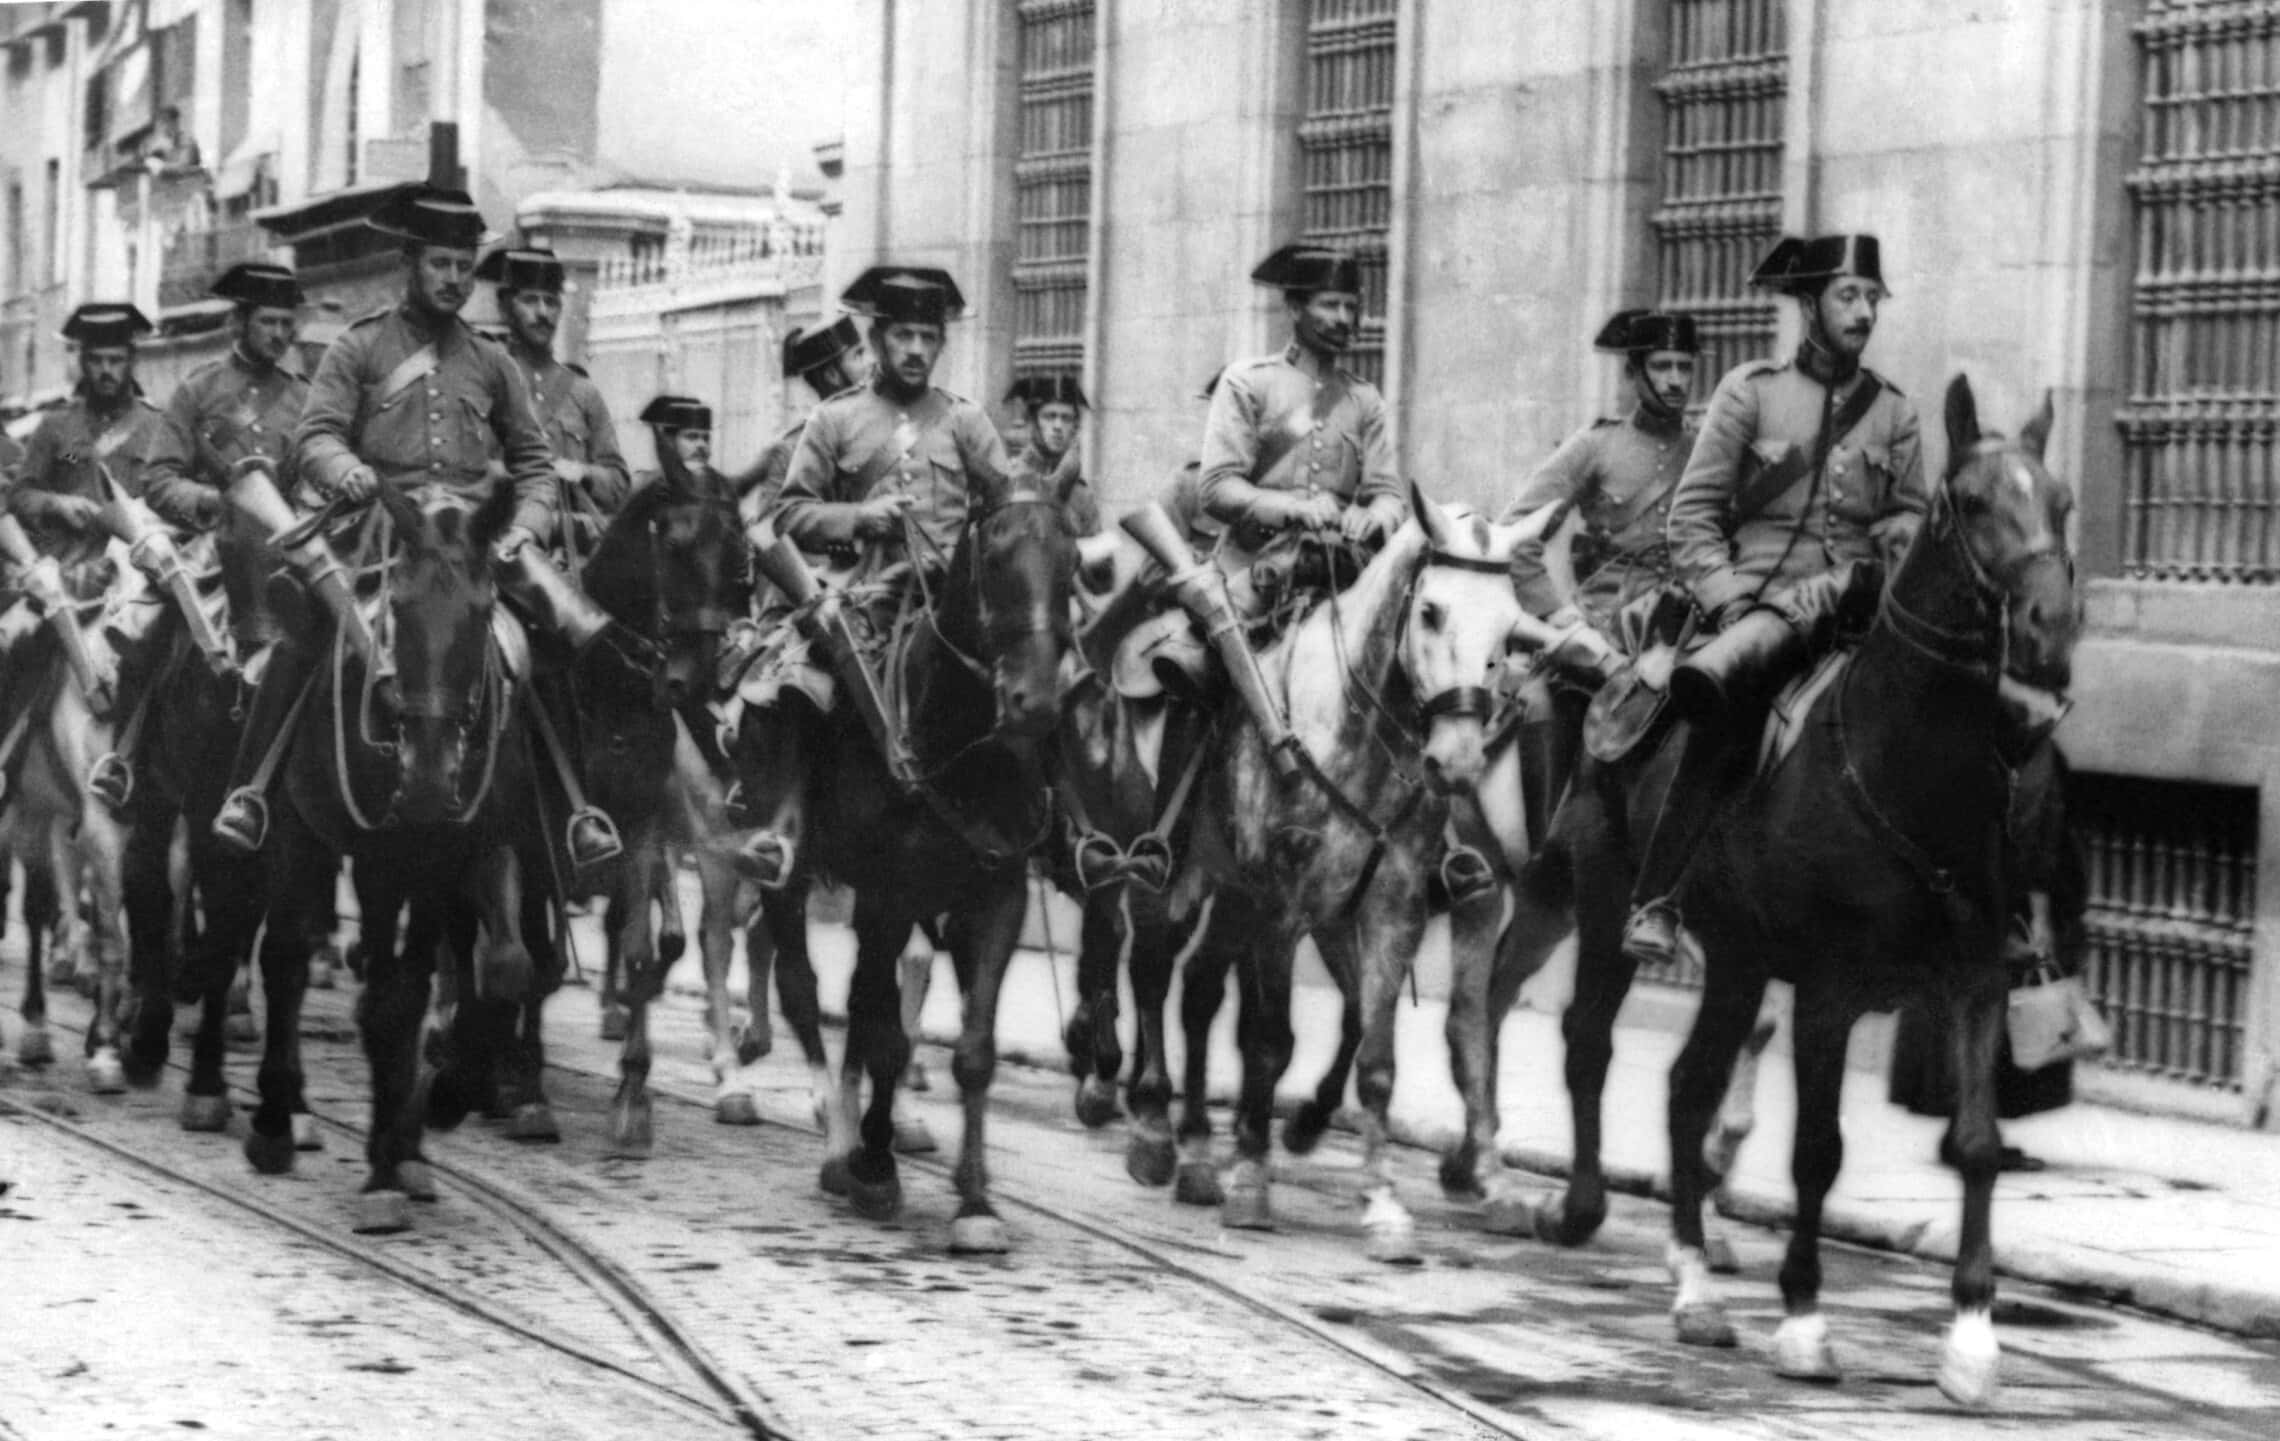 תמונה שצולמה במהלך מלחמת האזרחים בספרד בסוף שנות ה-30 ובה נראים שוטרים הנאמנים לגנרל פרנקו רוכבים ברחוב של עיירה לא מזוהה בספרד (צילום: AFP)